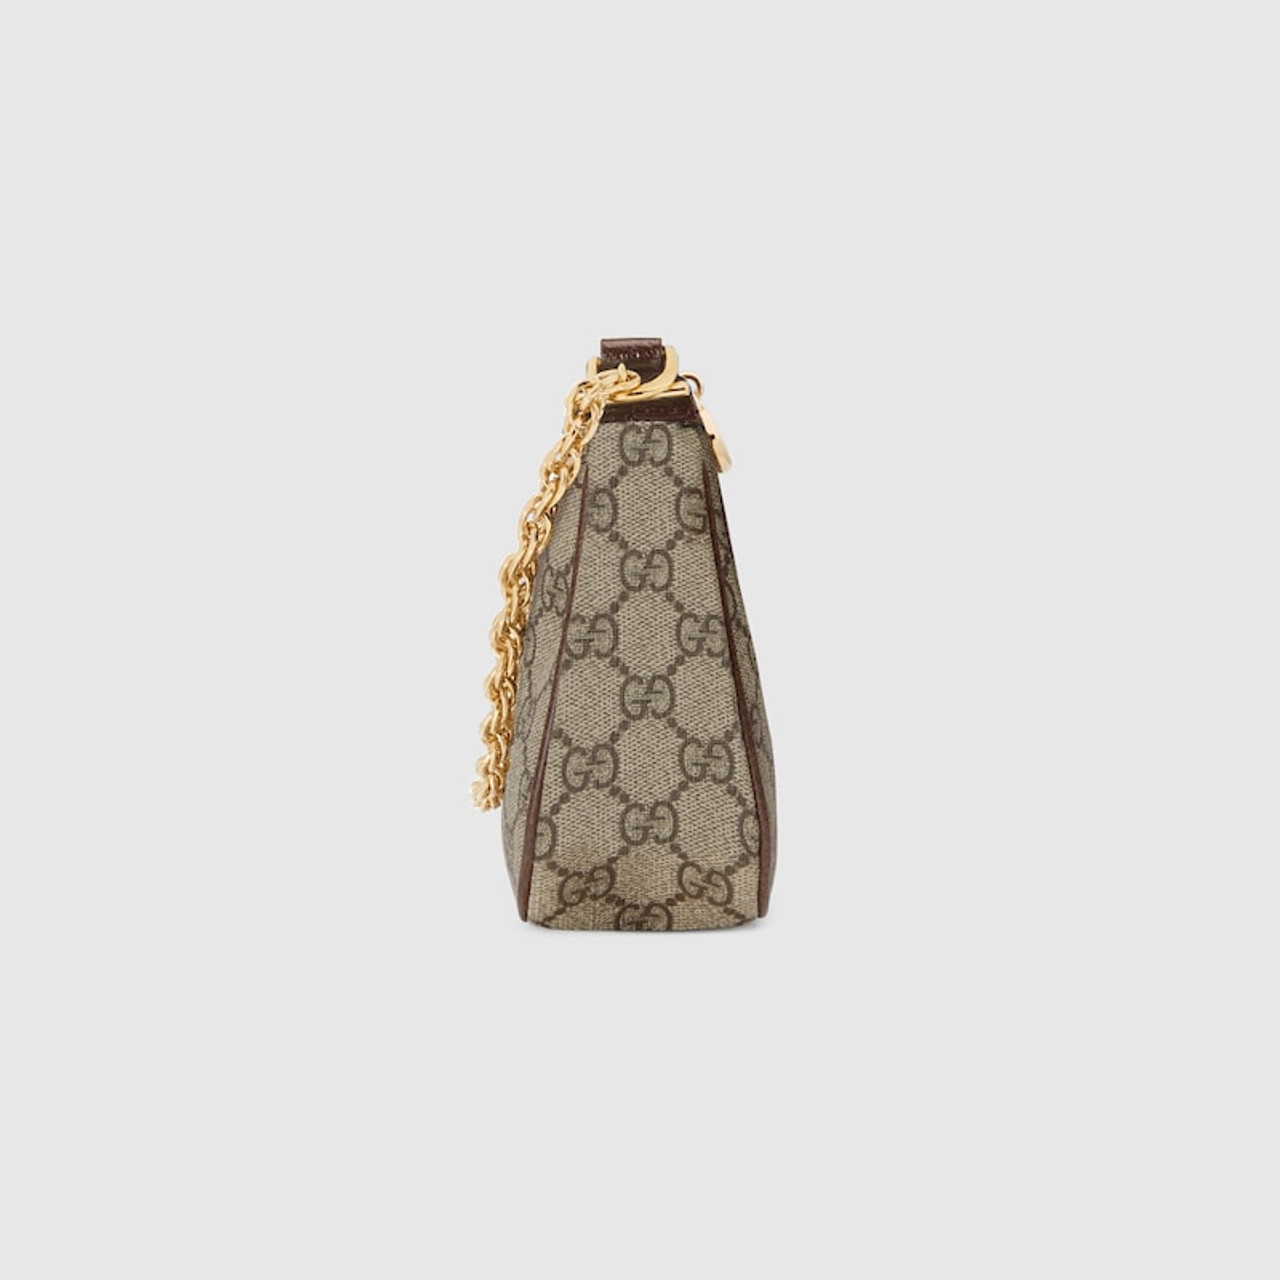 Gucci woman tote bag original leather version | Gucci bag, Bags, Bags  designer